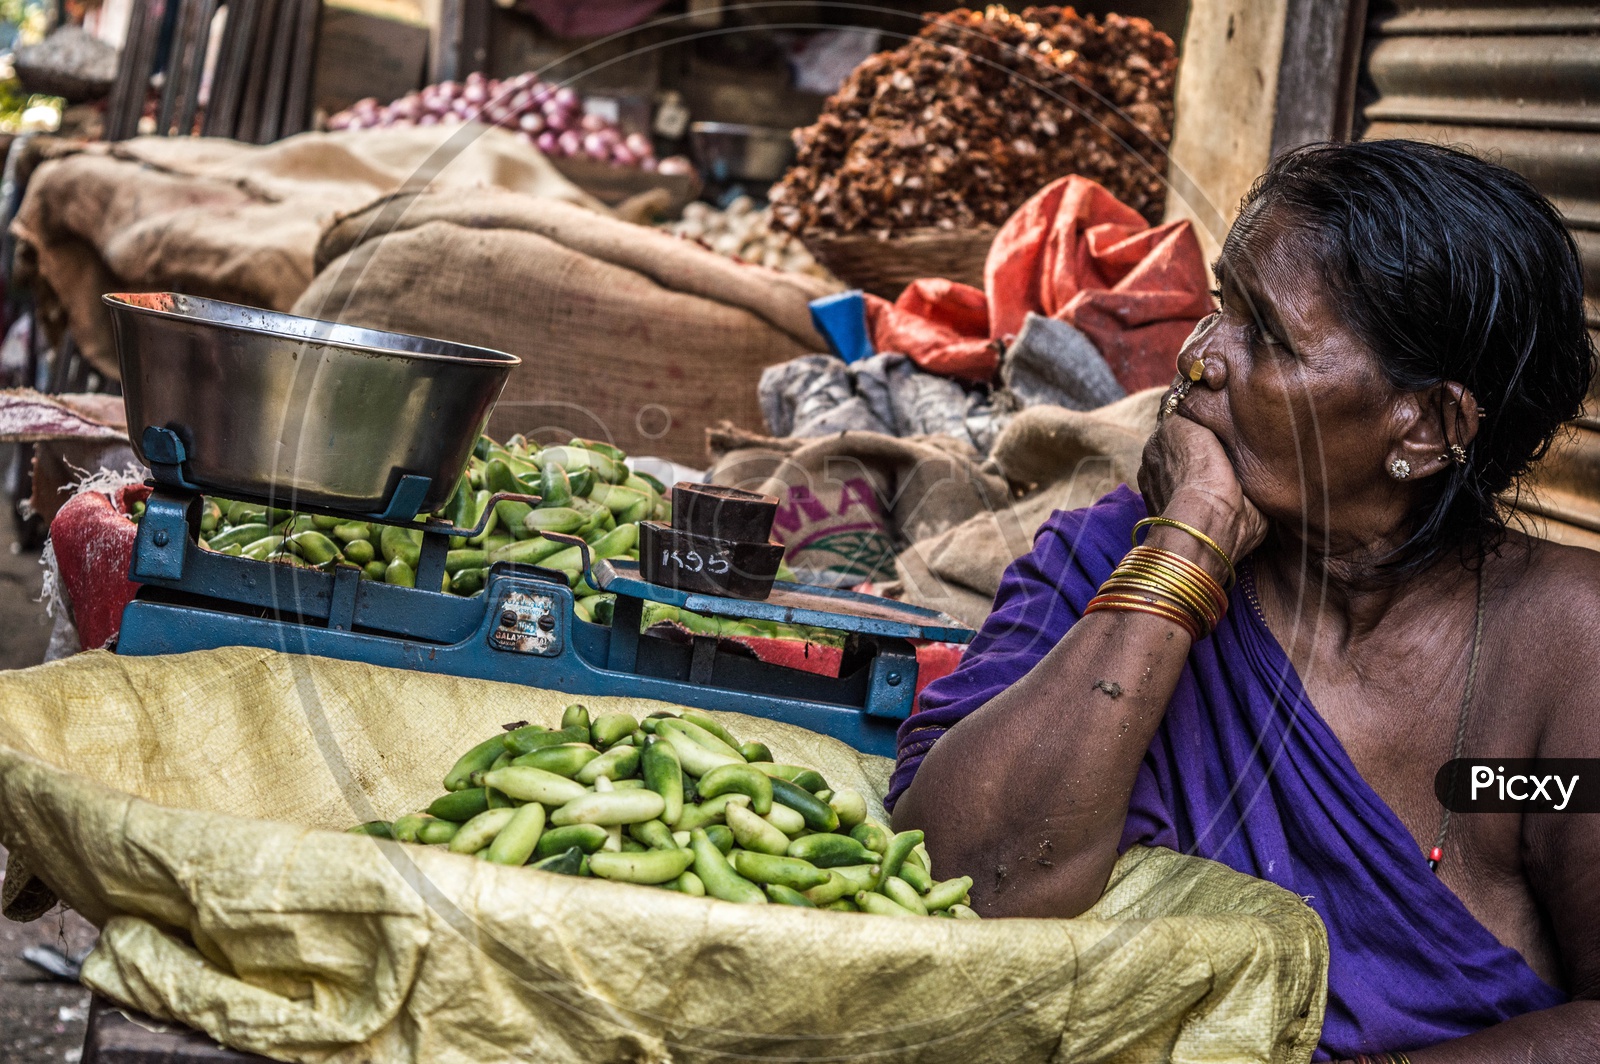 Female Vendor at Vegetable Market